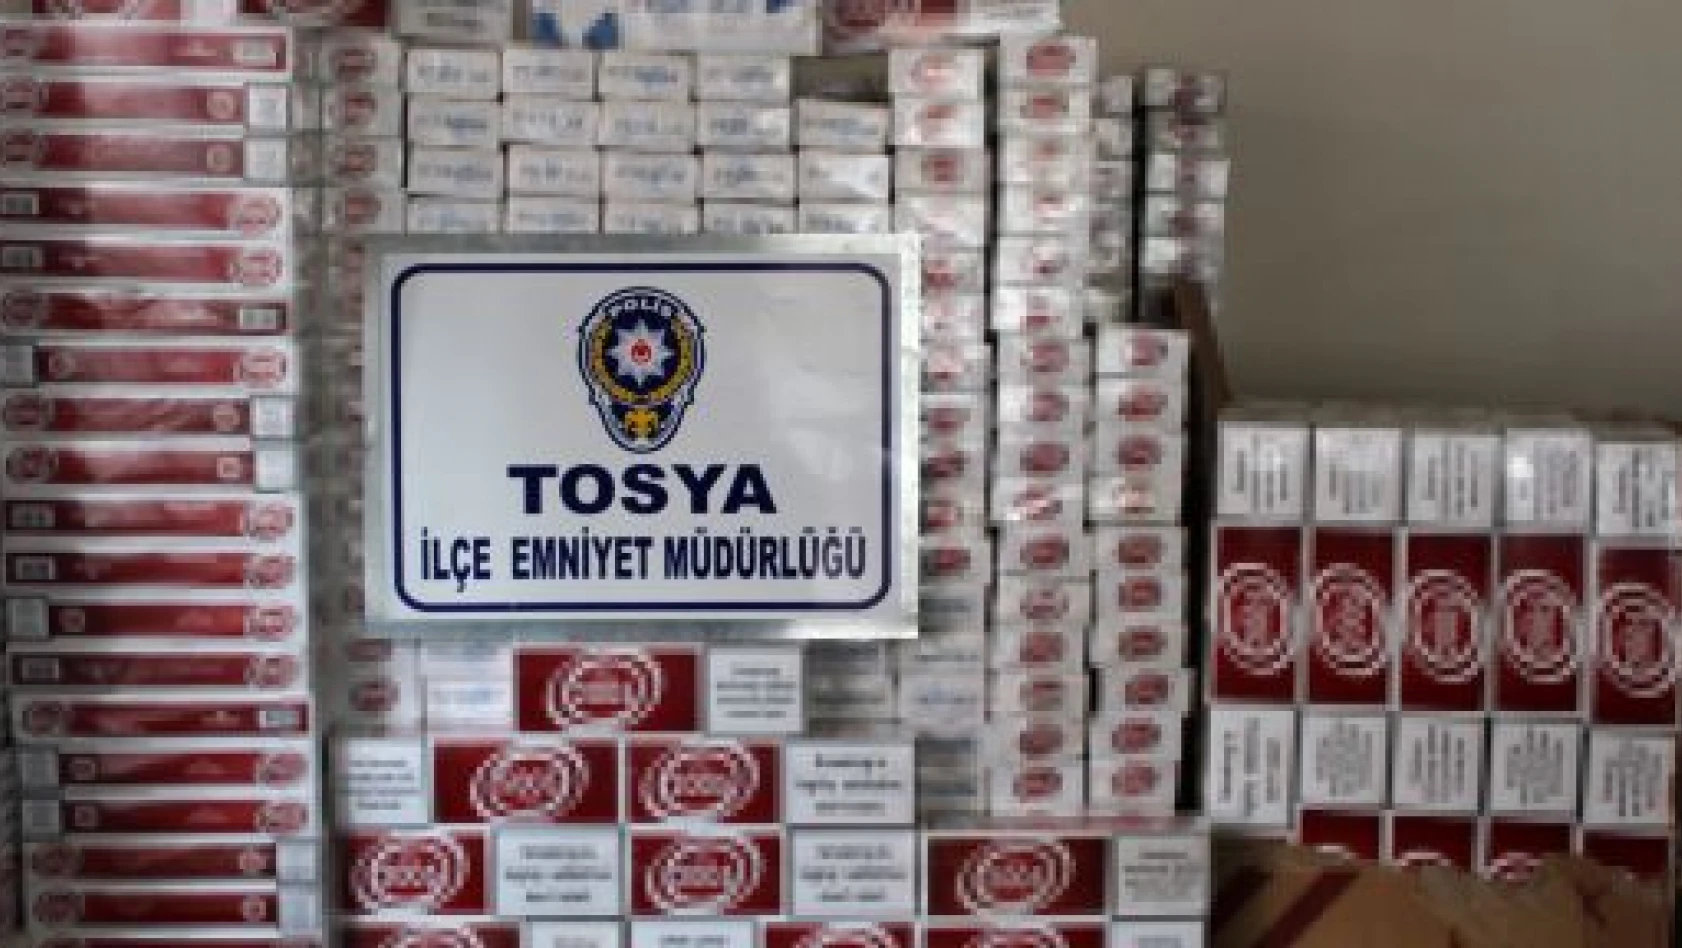 Tosya'da 7 Bin 390 Paket Kaçak Sigara Ele Geçirildi